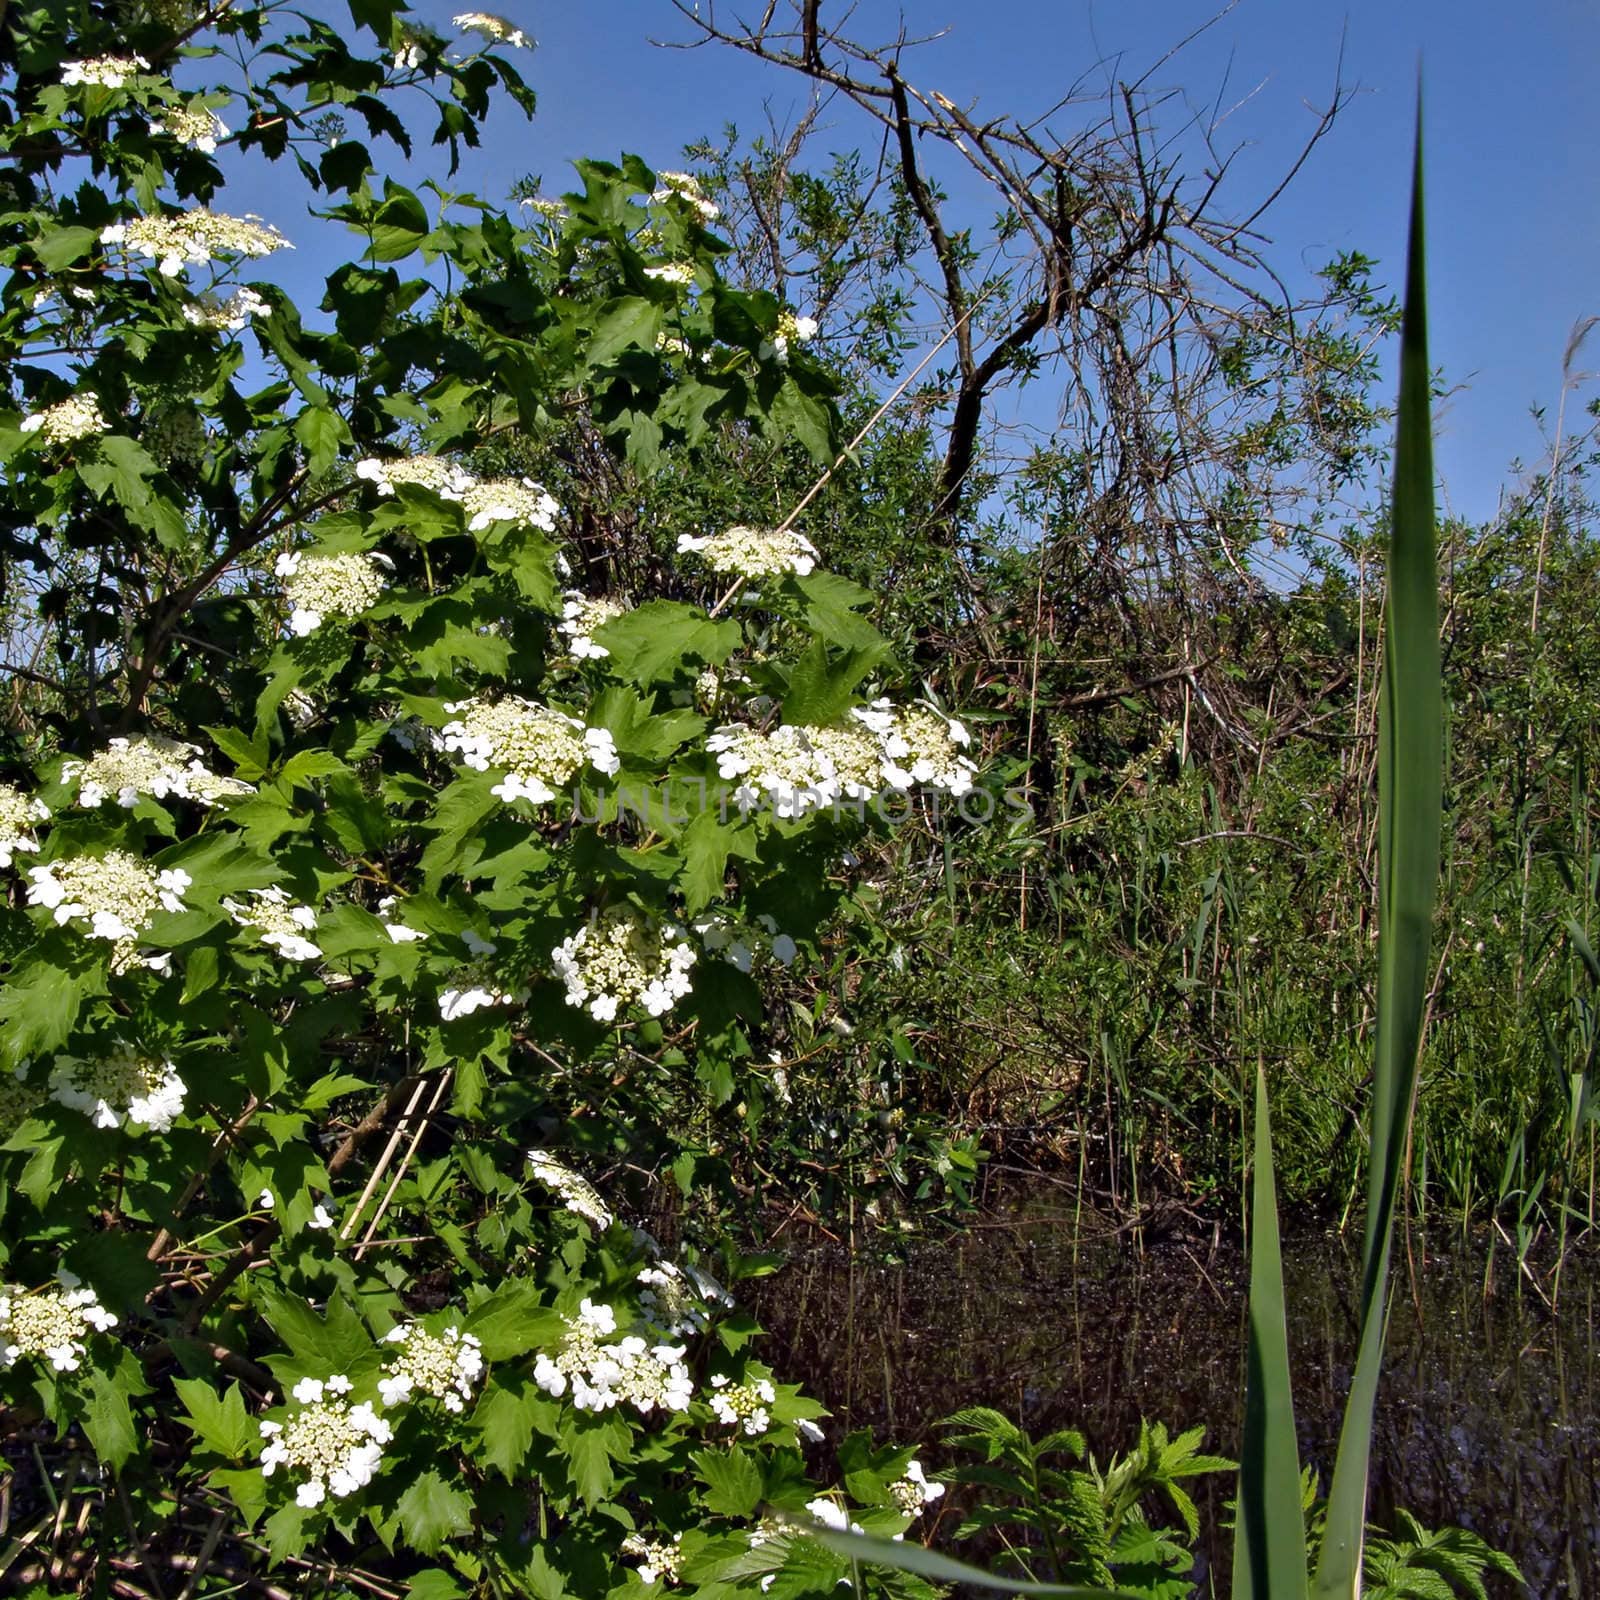 flower of the viburnum near marsh by basel101658